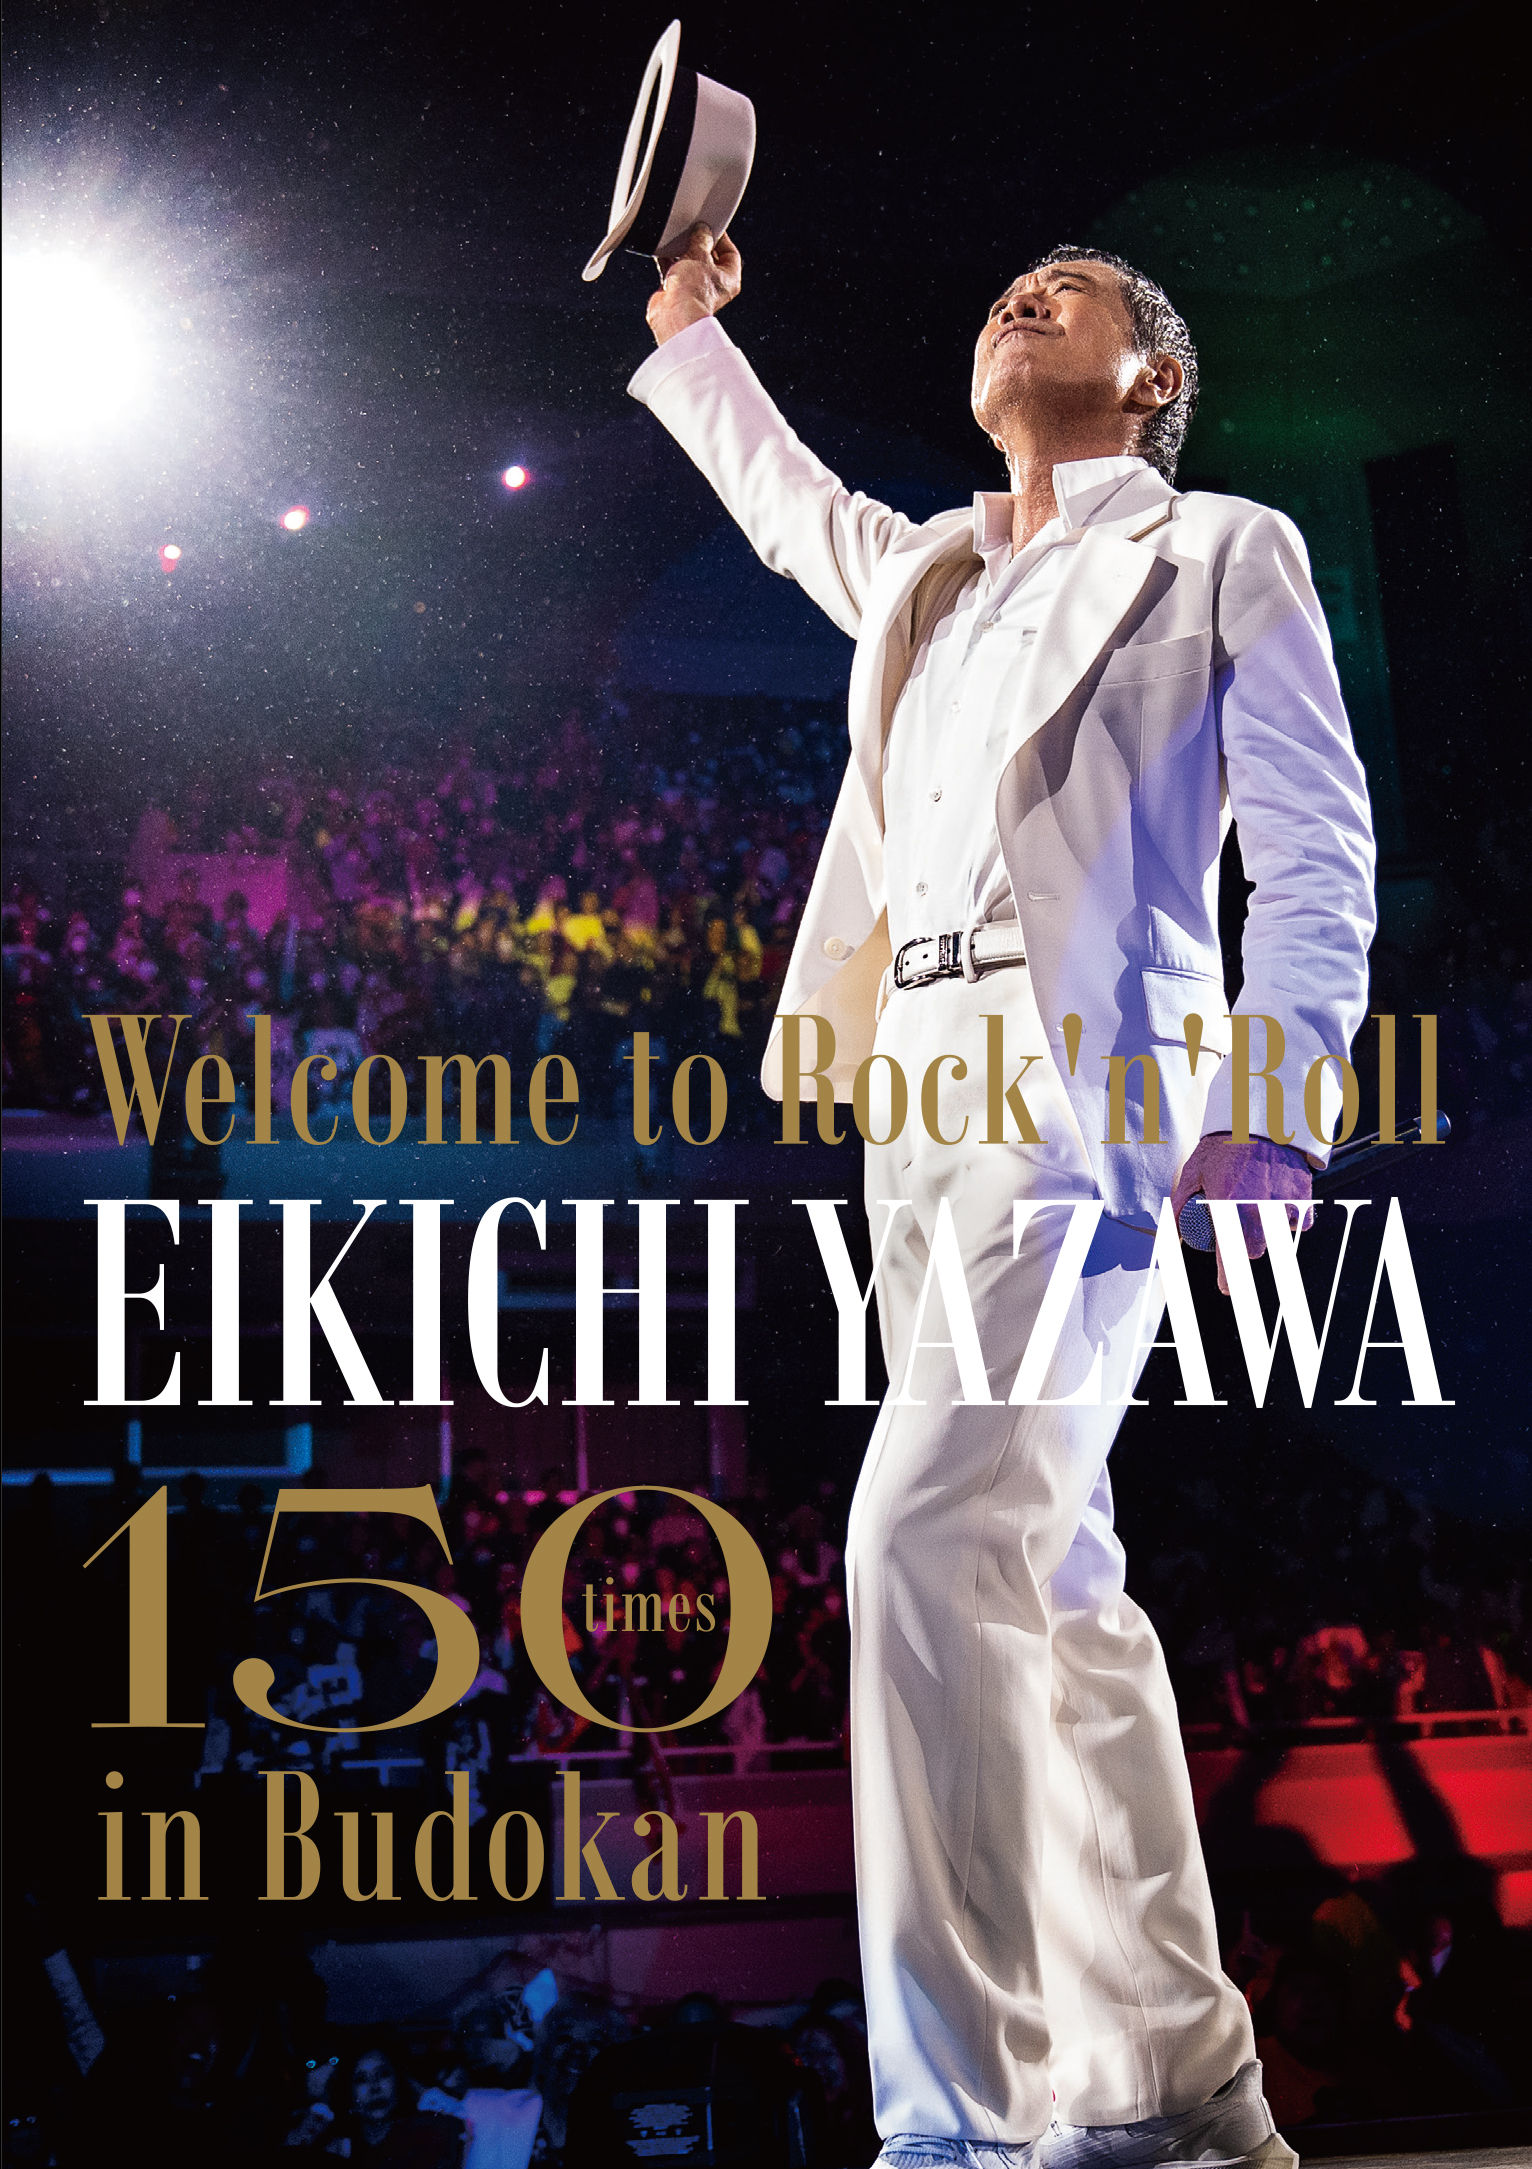 Welcome to Rock'n'Roll～ EIKICHI YAZAWA 150times in Budokan」 3月